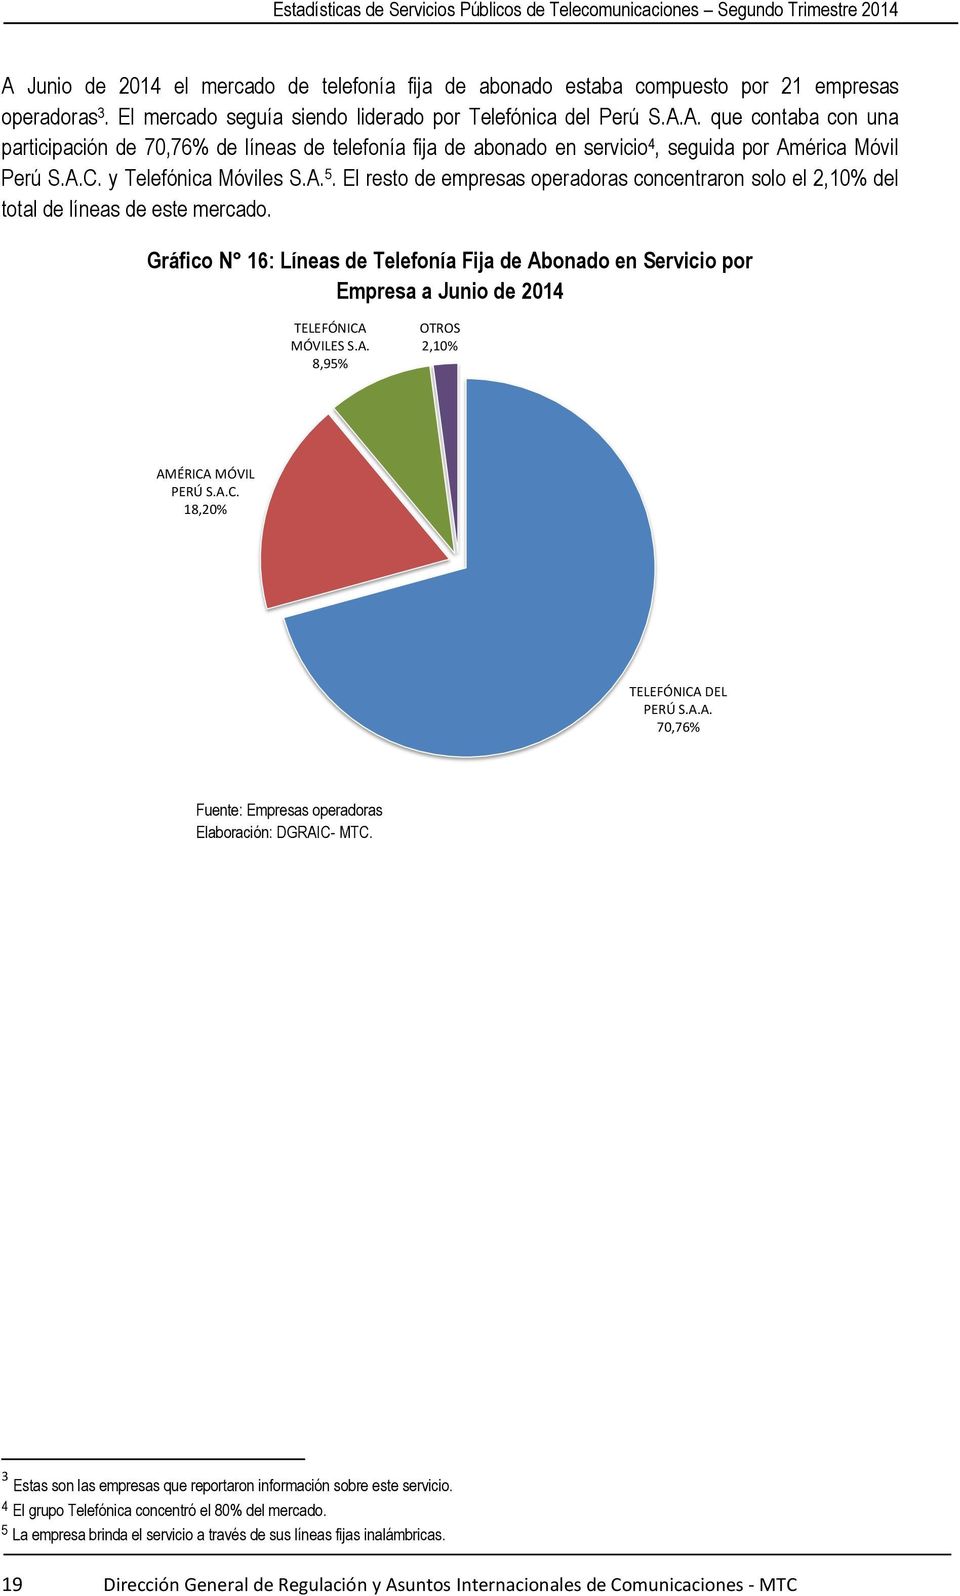 Gráfico N 16: Líneas de Telefonía Fija de Abonado en Servicio por Empresa a Junio de 2014 TELEFÓNICA MÓVILES S.A. 8,95% OTROS 2,10% AMÉRICA MÓVIL PERÚ S.A.C. 18,20% TELEFÓNICA DEL PERÚ S.A.A. 70,76% 3 Estas son las empresas que reportaron información sobre este servicio.